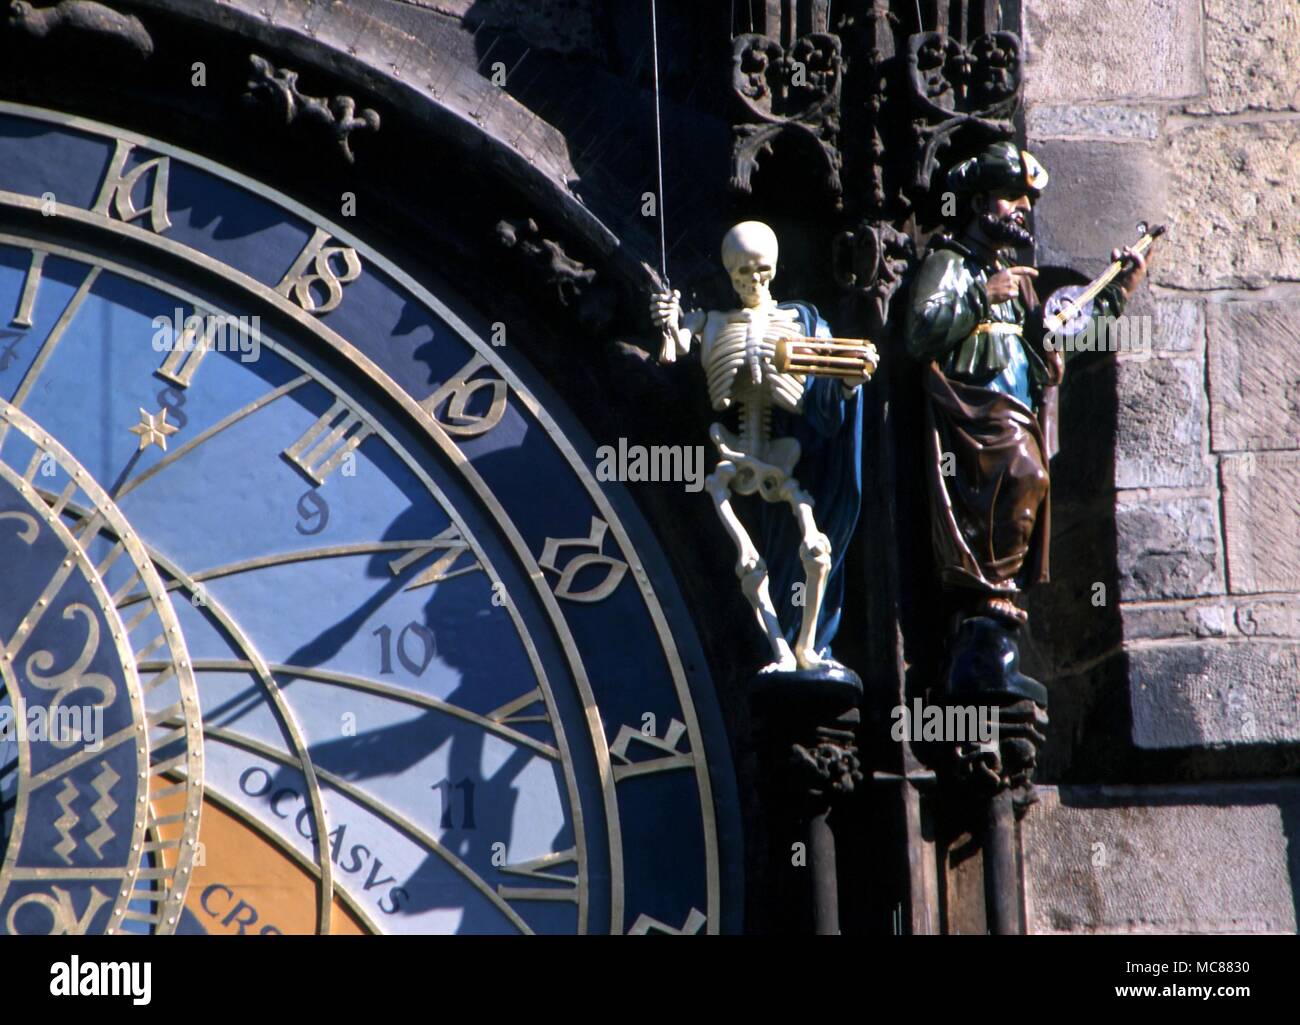 La morte come uno scheletro battendo un tamburo - probabilmente una rappresentazione di Saturno - sulla faccia di clock del horlogium nel centro di Praga. Foto Stock